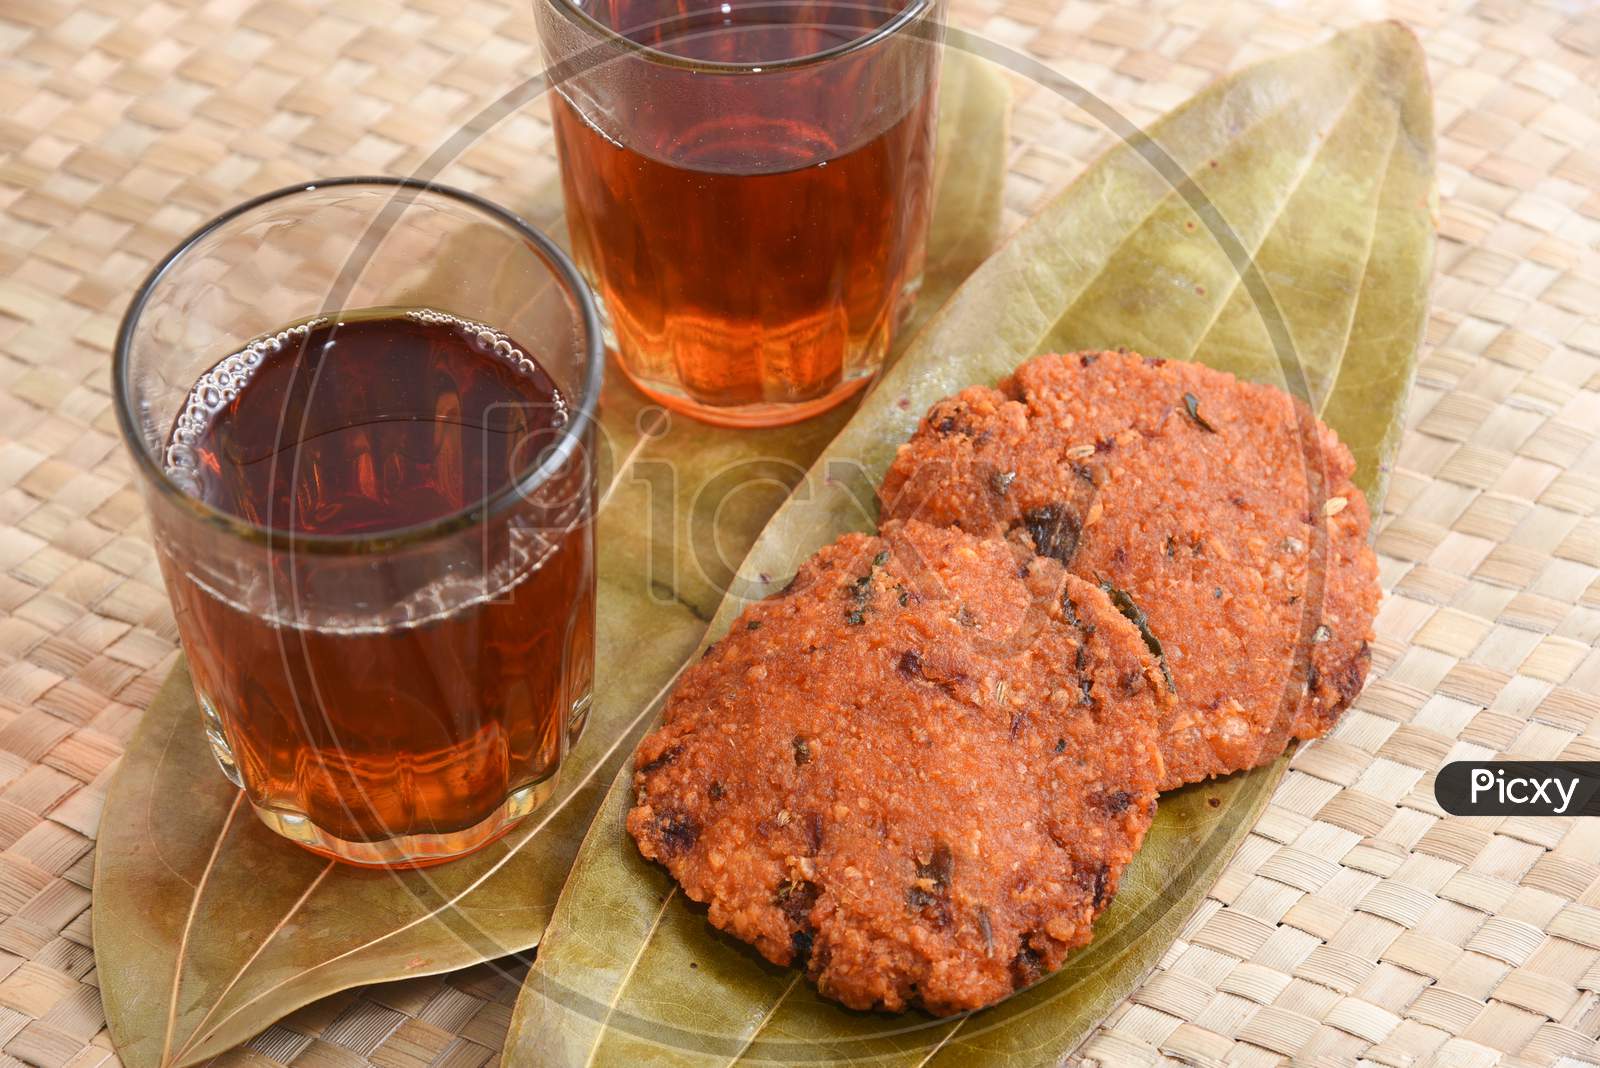 Parippu vada Kerala snack with Indian tea